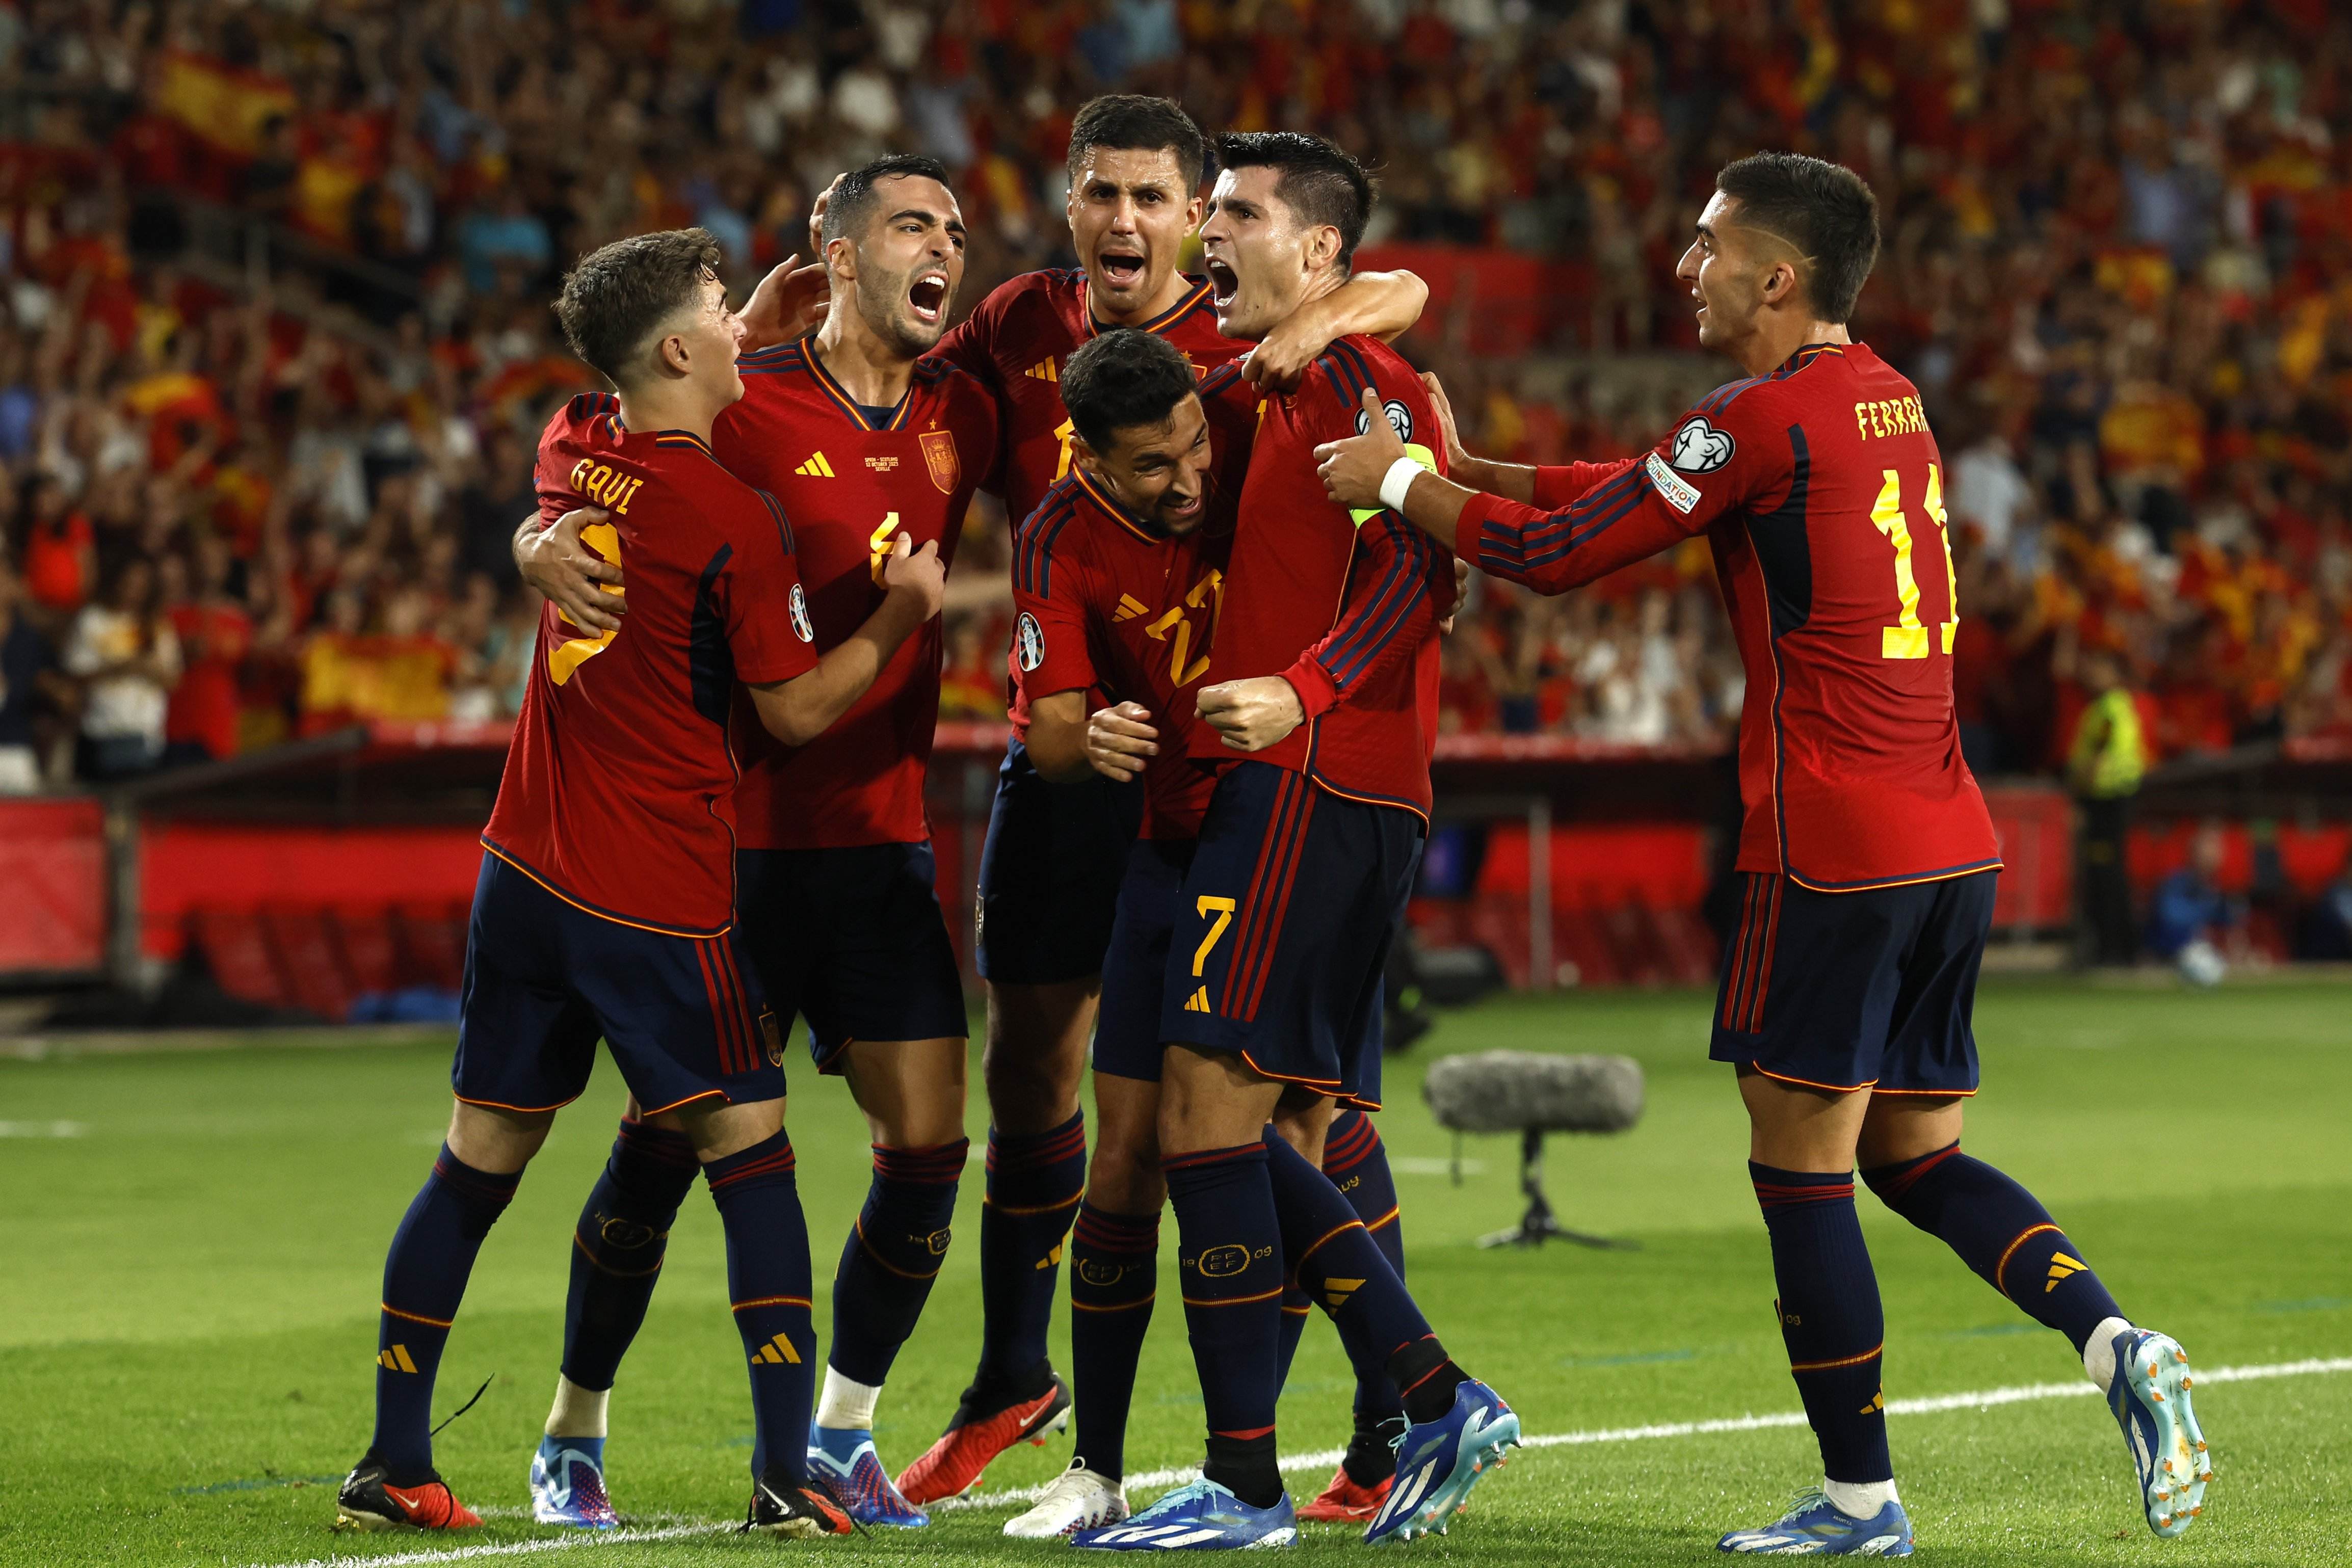 España se toma la revancha ante Escocia y recupera terreno en el Grupo A (2-0)